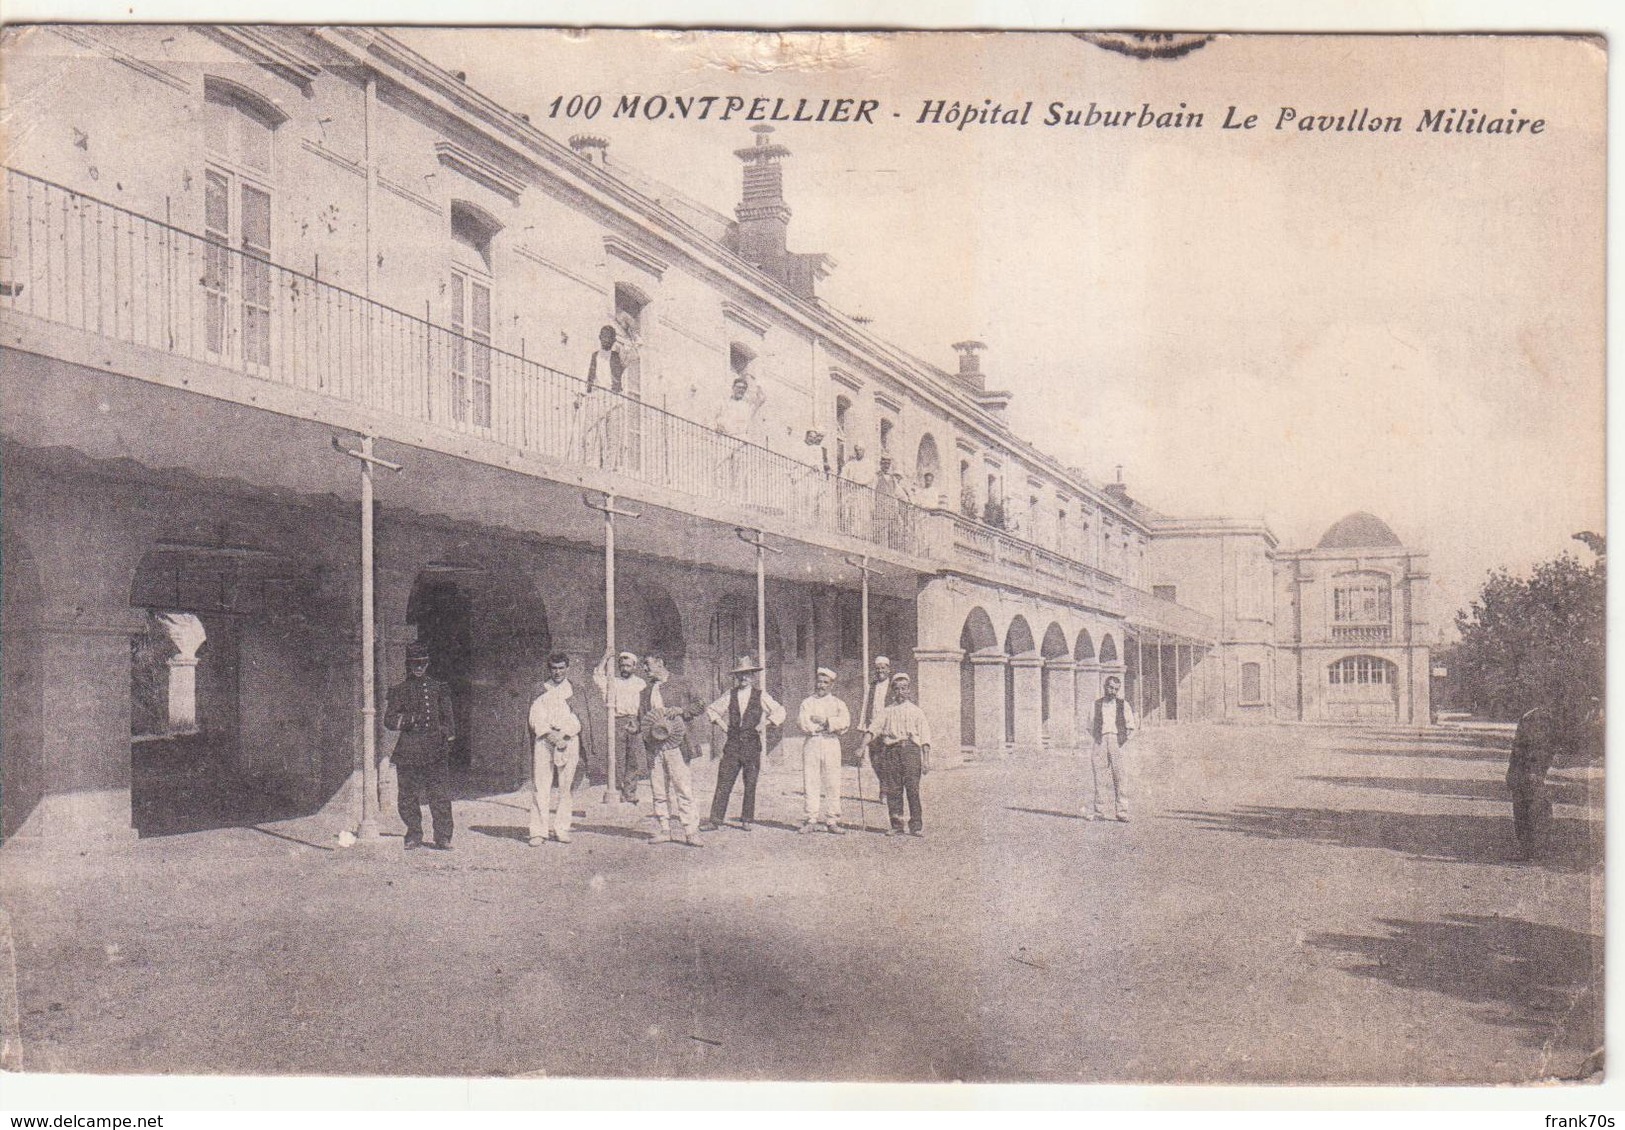 34-.Montpellier - Hôpital Suburbain, Le Pavillon Militaire. SP366 - Montpellier